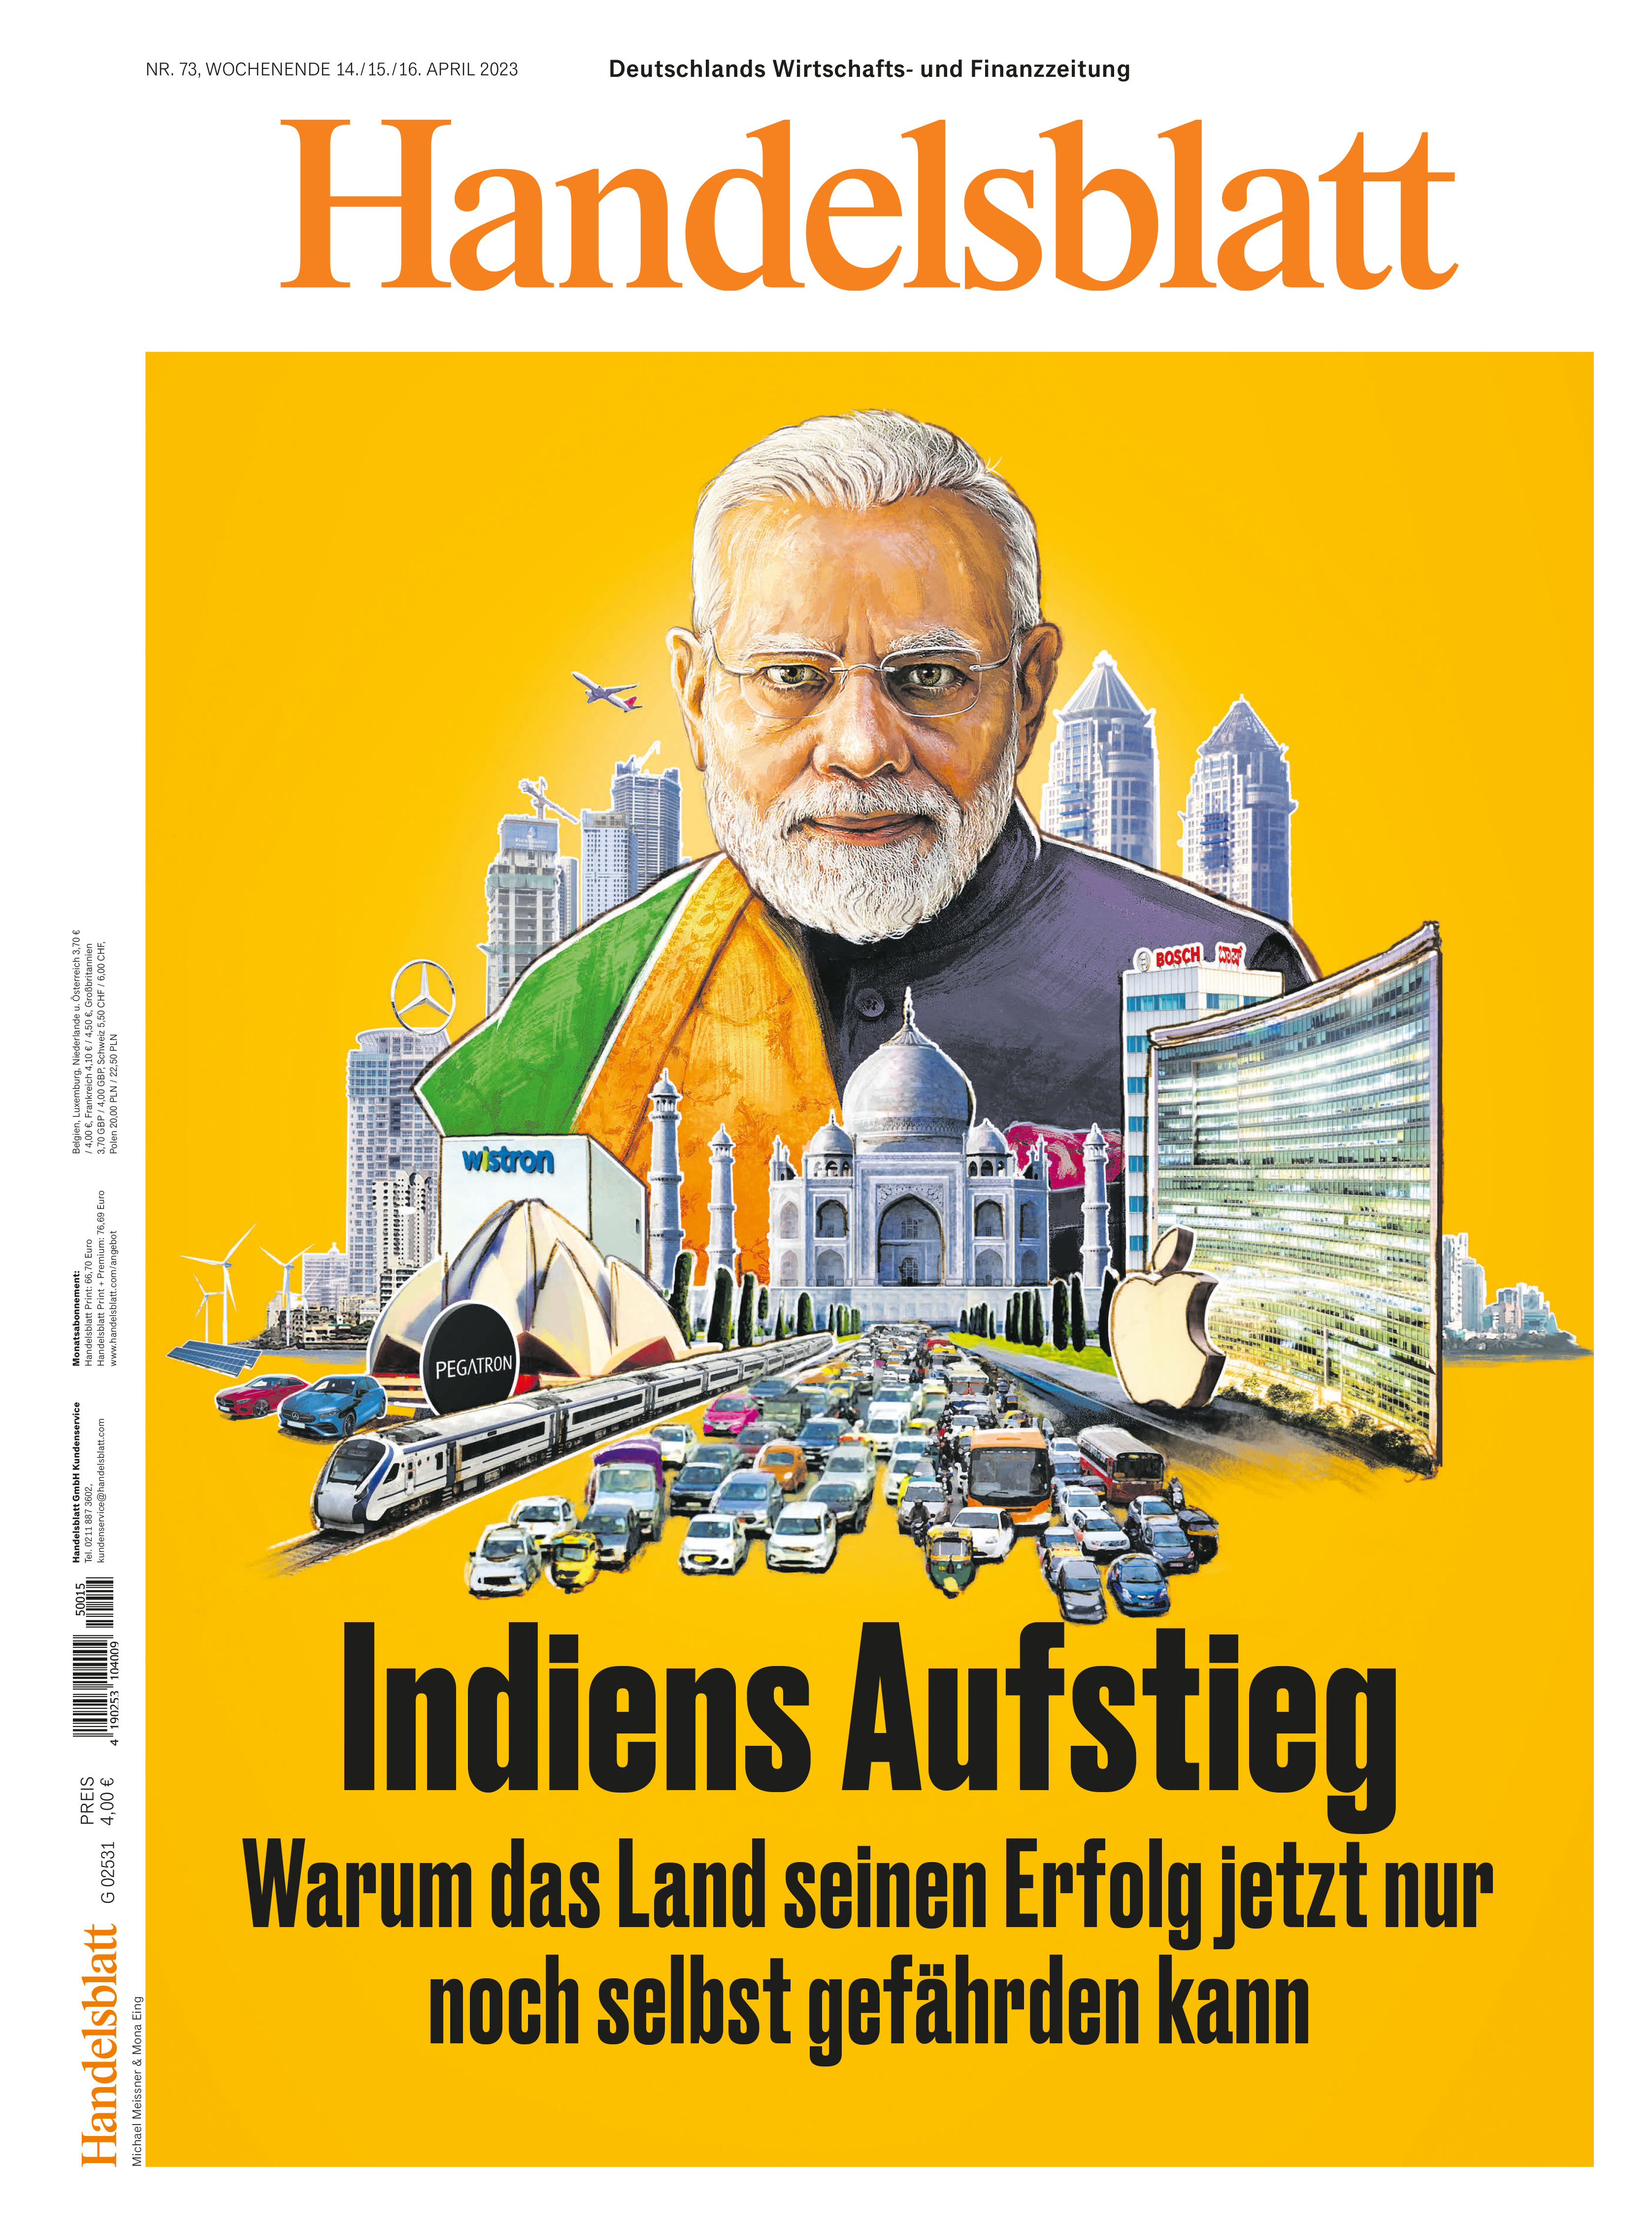 #29 Rising India - Handelsblatt April 2023